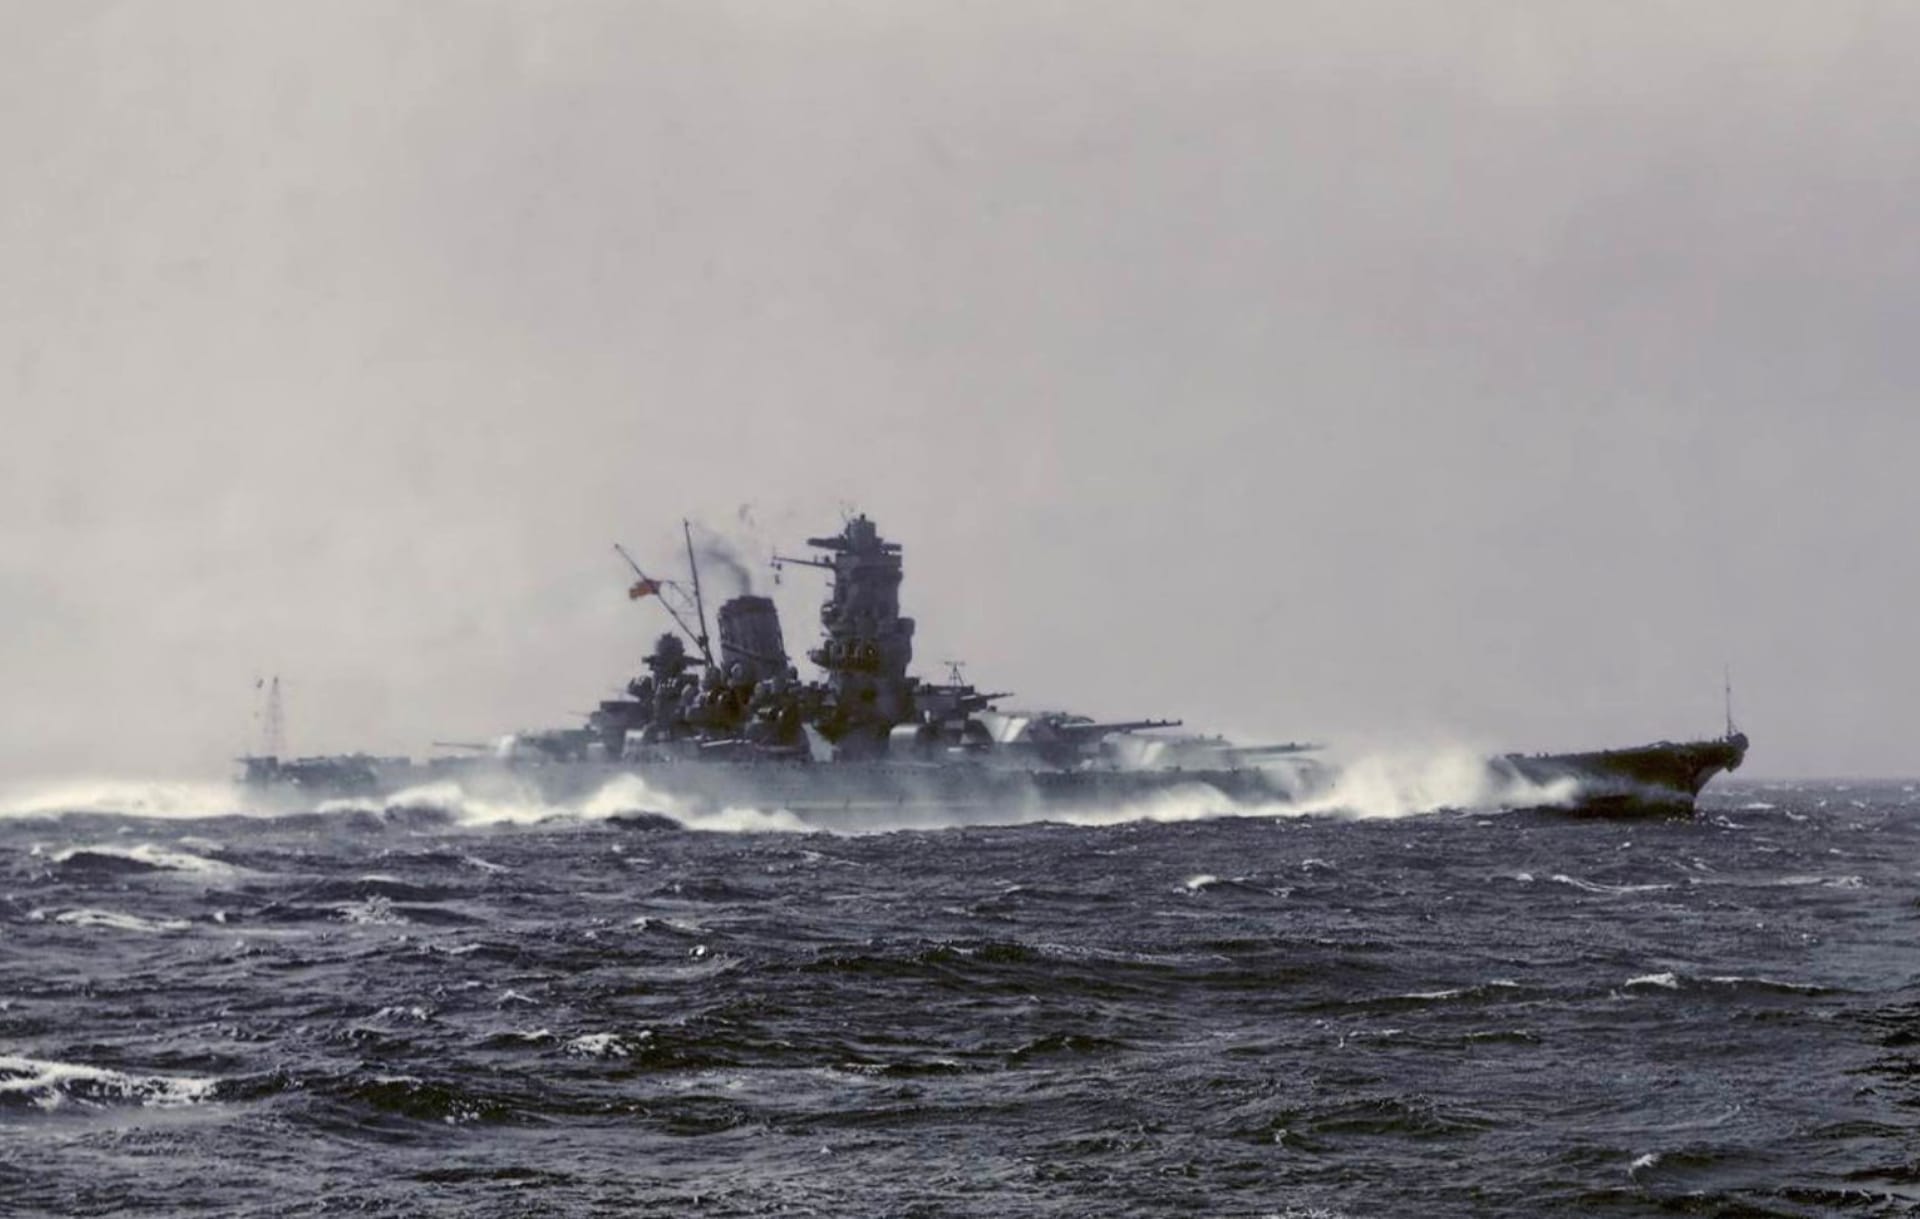 Japanese battleship Yamato at 1600 x 1200 size wallpapers HD quality